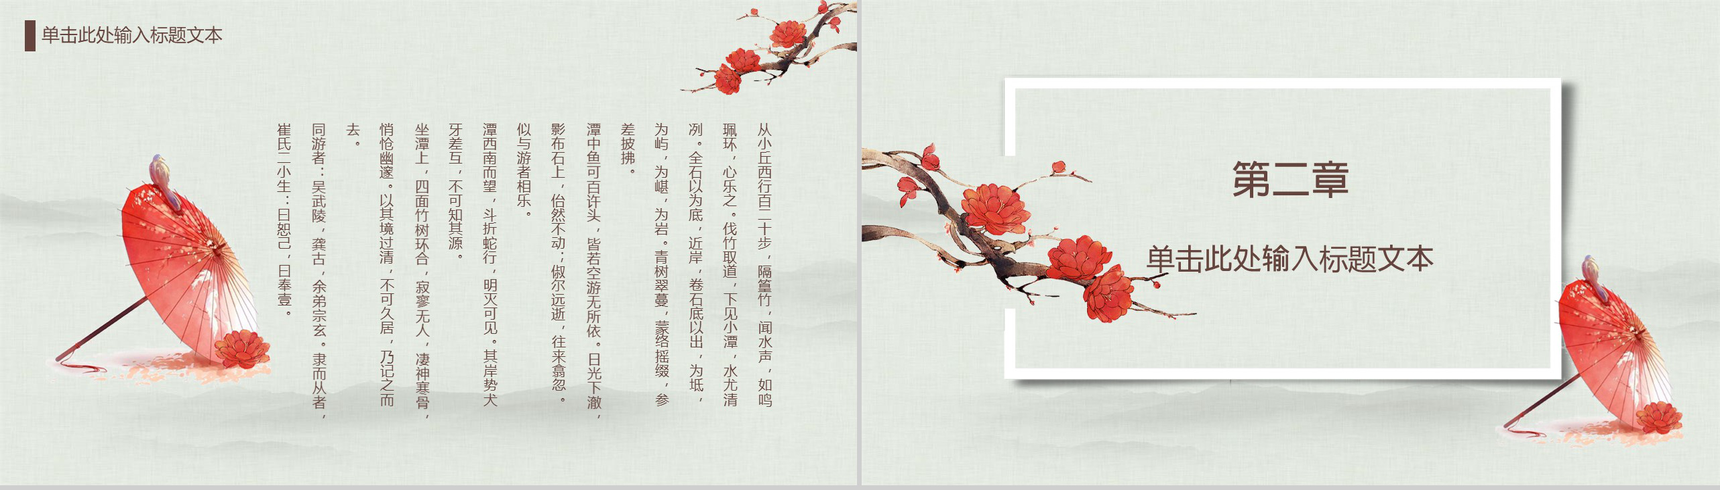 中国传统文化宫廷风传统文化PPT模板-5